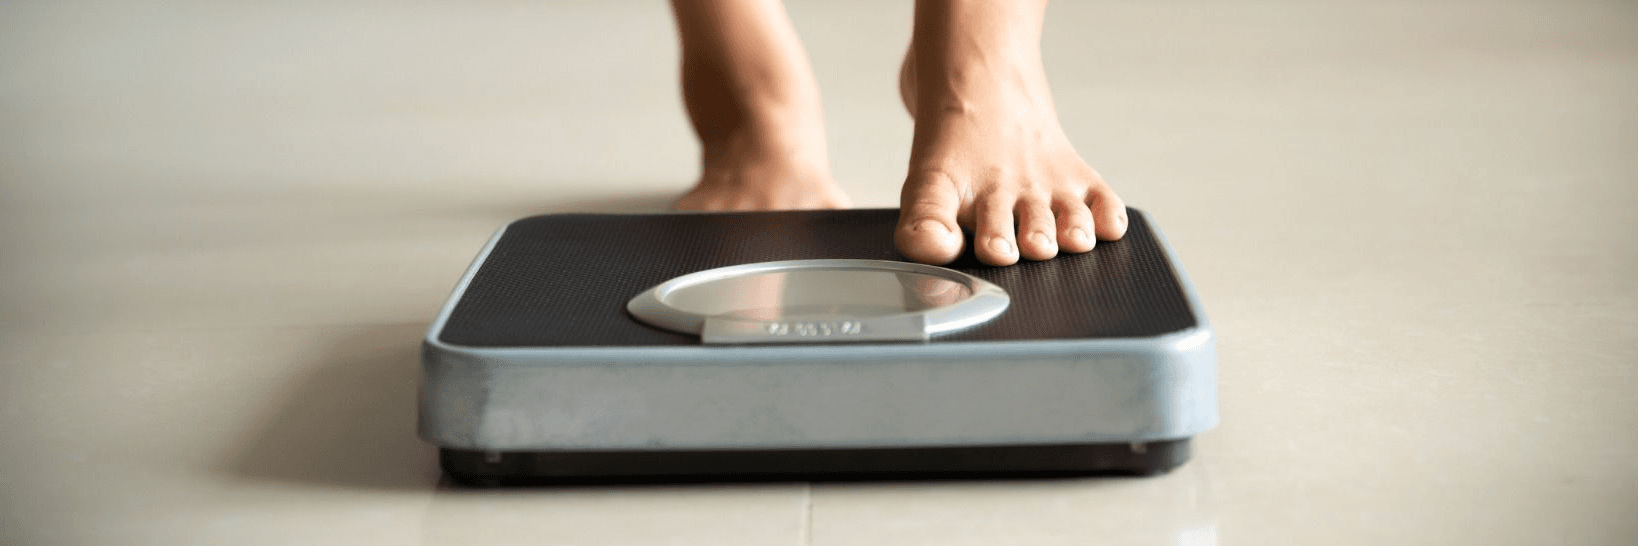 Bestimmung des Body-Mass-Index (BMI)